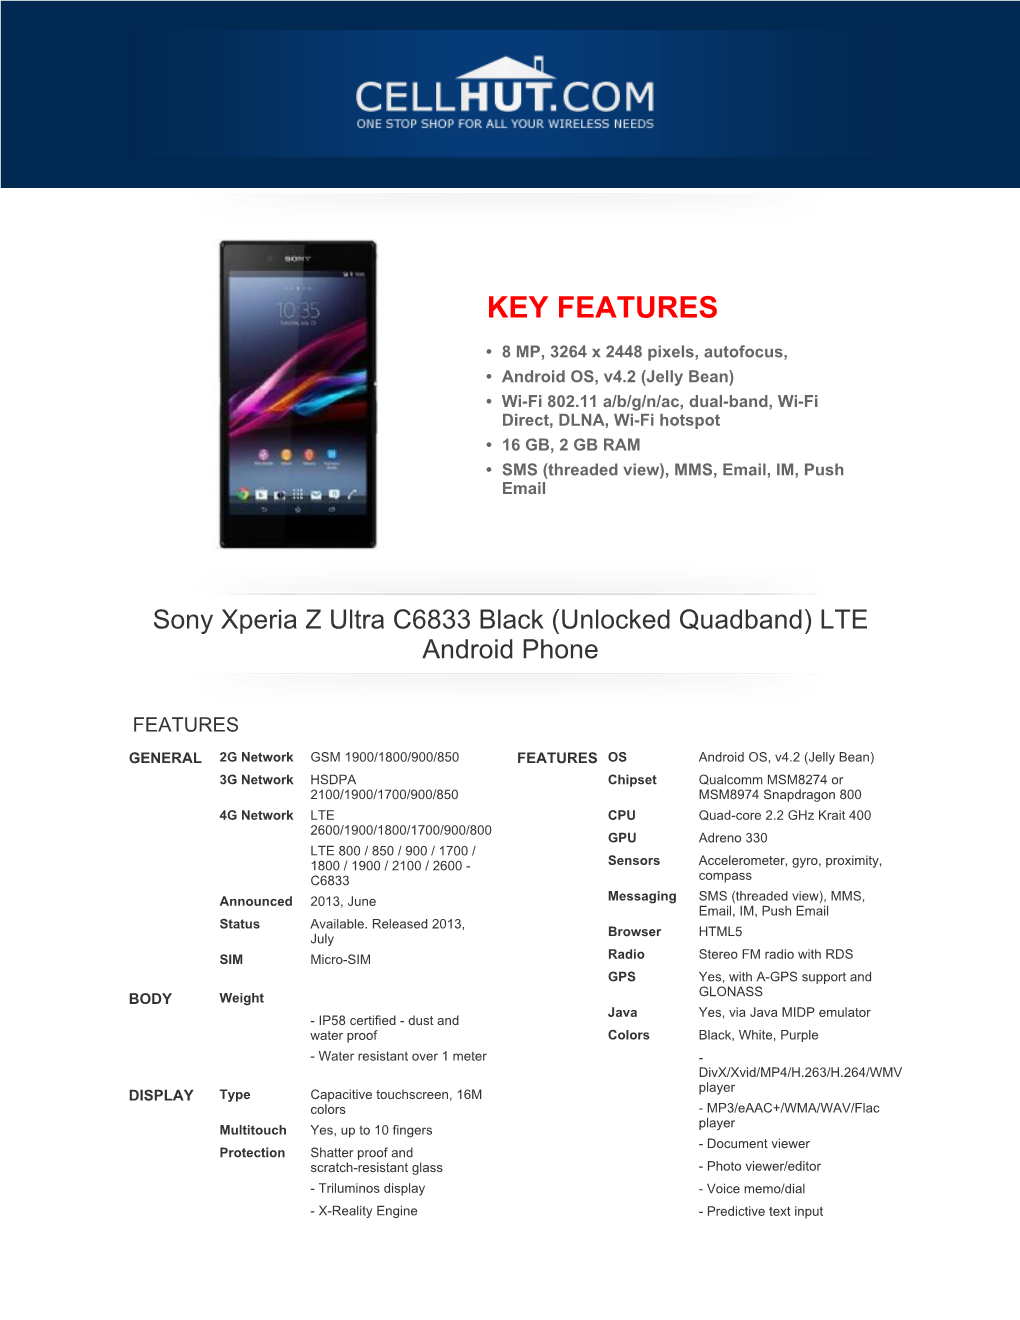 Sony Xperia Z Ultra C6833 Black (Unlocked Quadband) LTE Android Phone